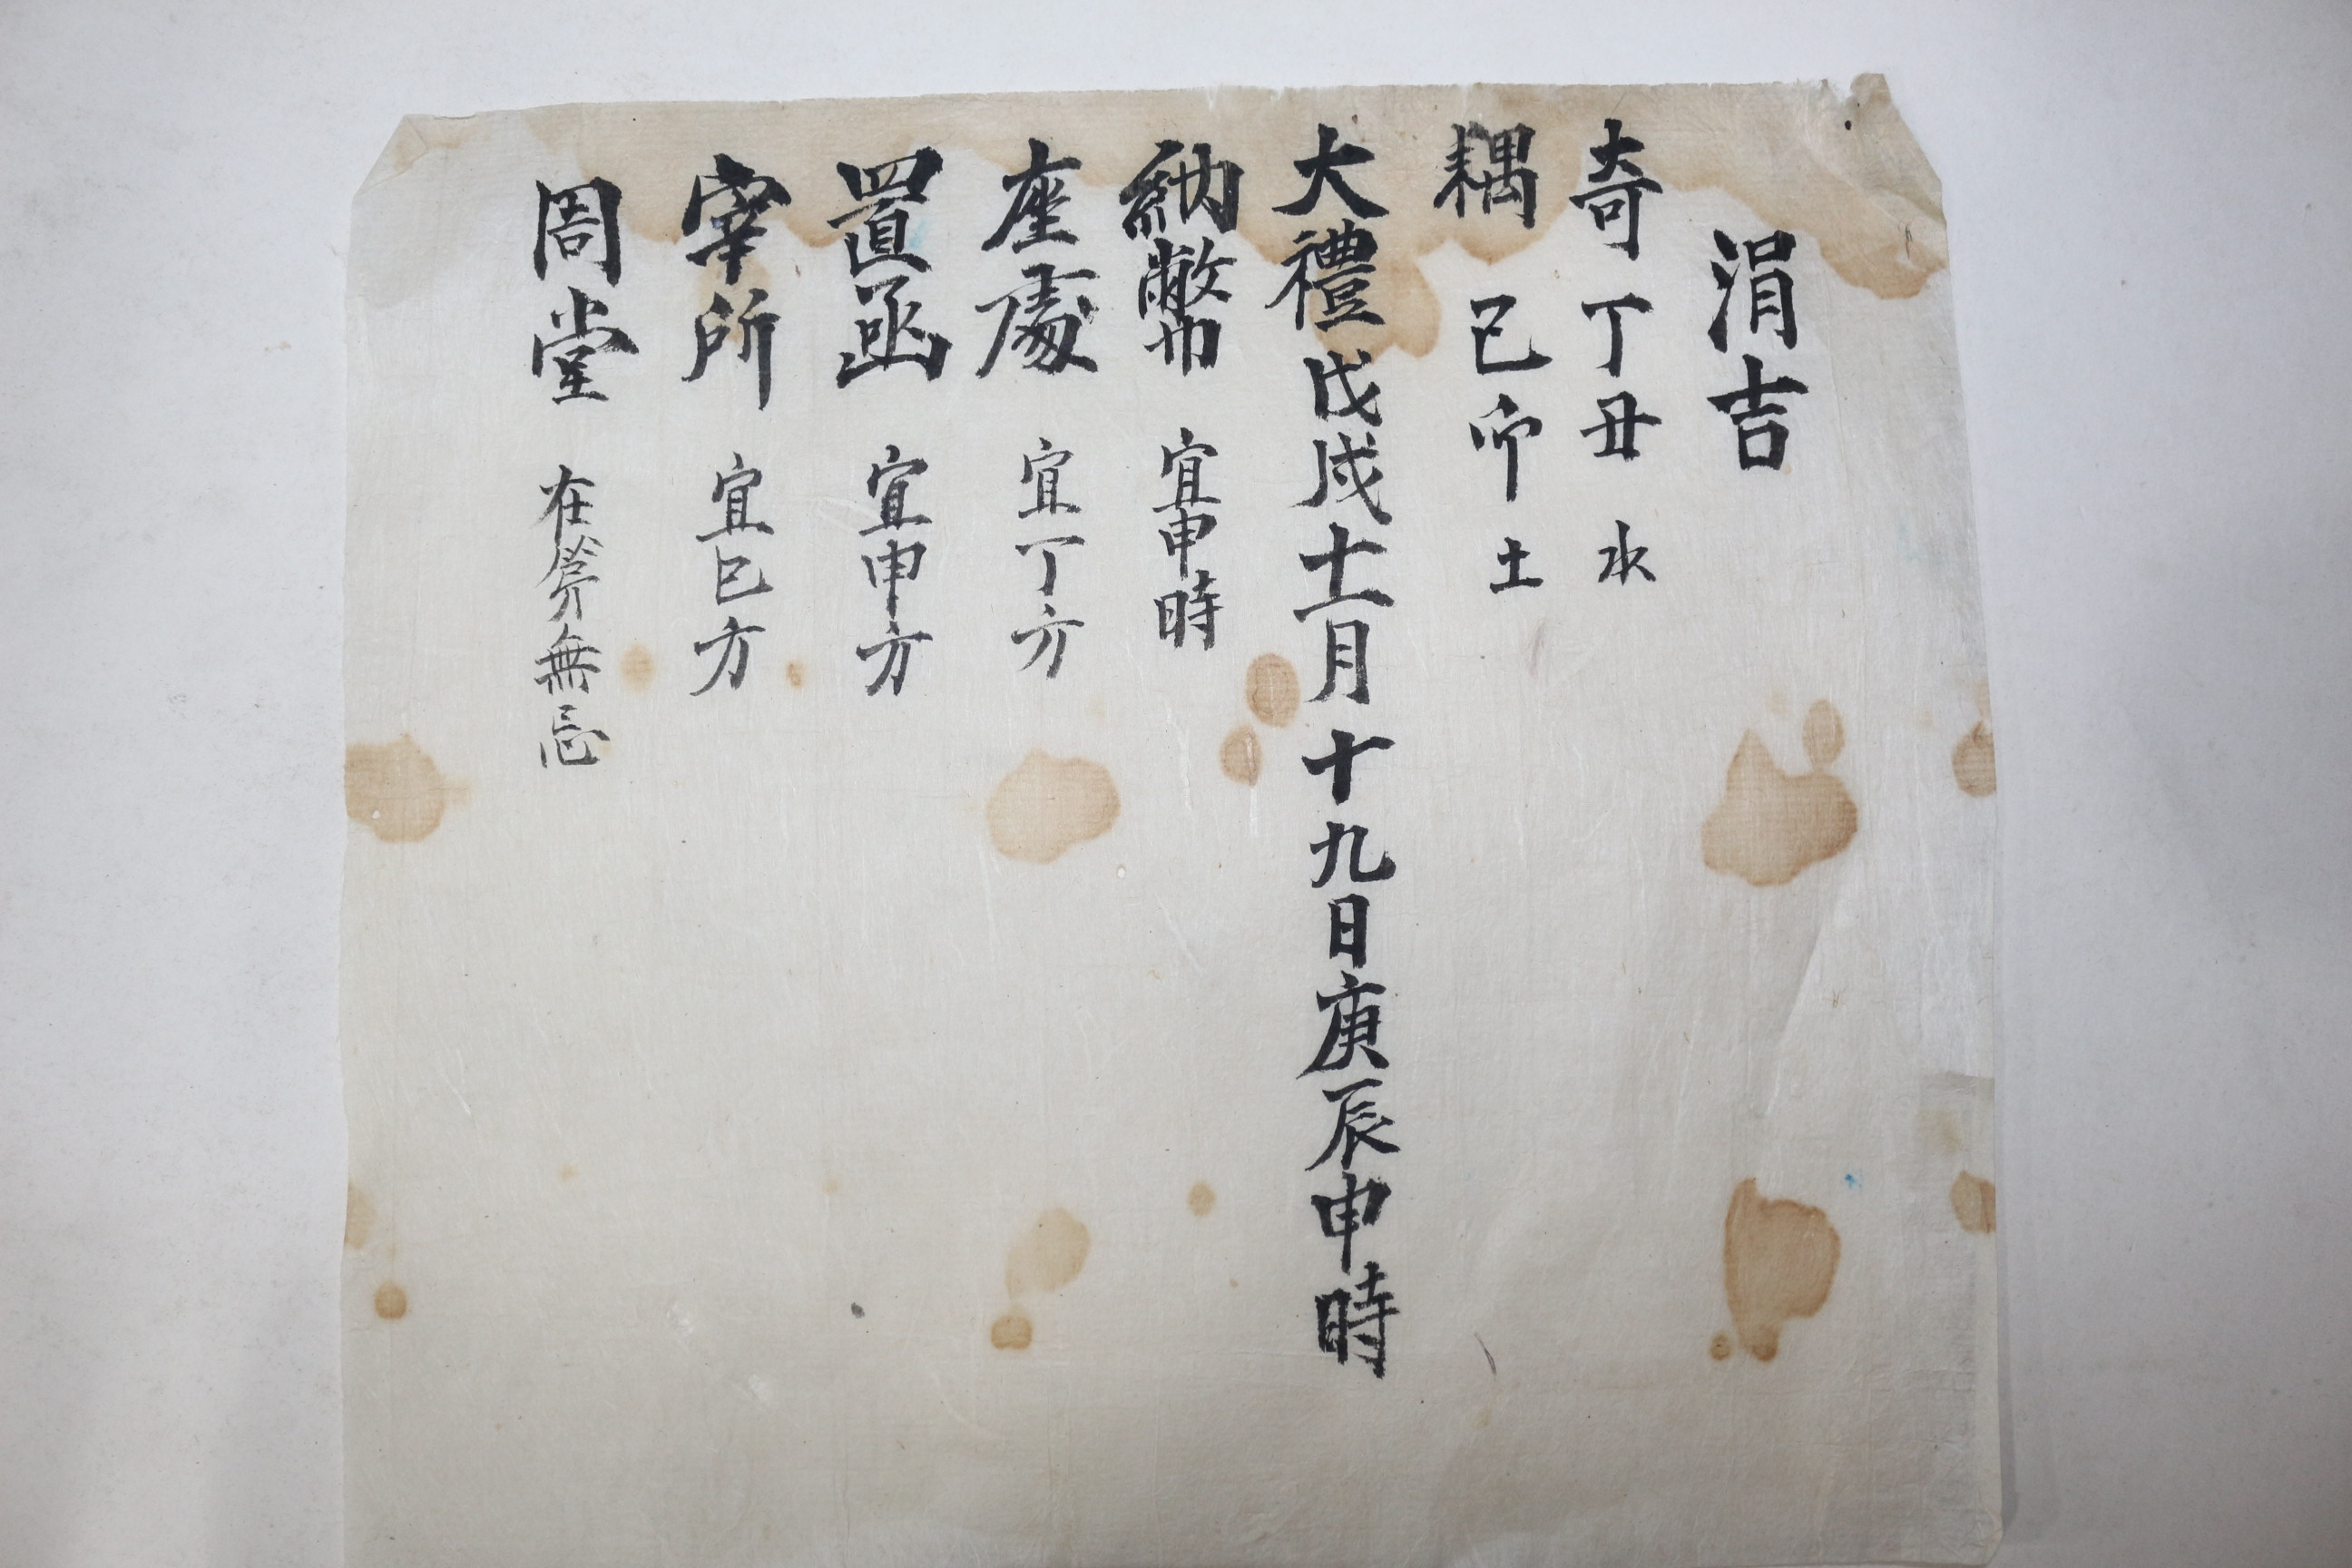 조선시대 혼인관련 문서 일괄